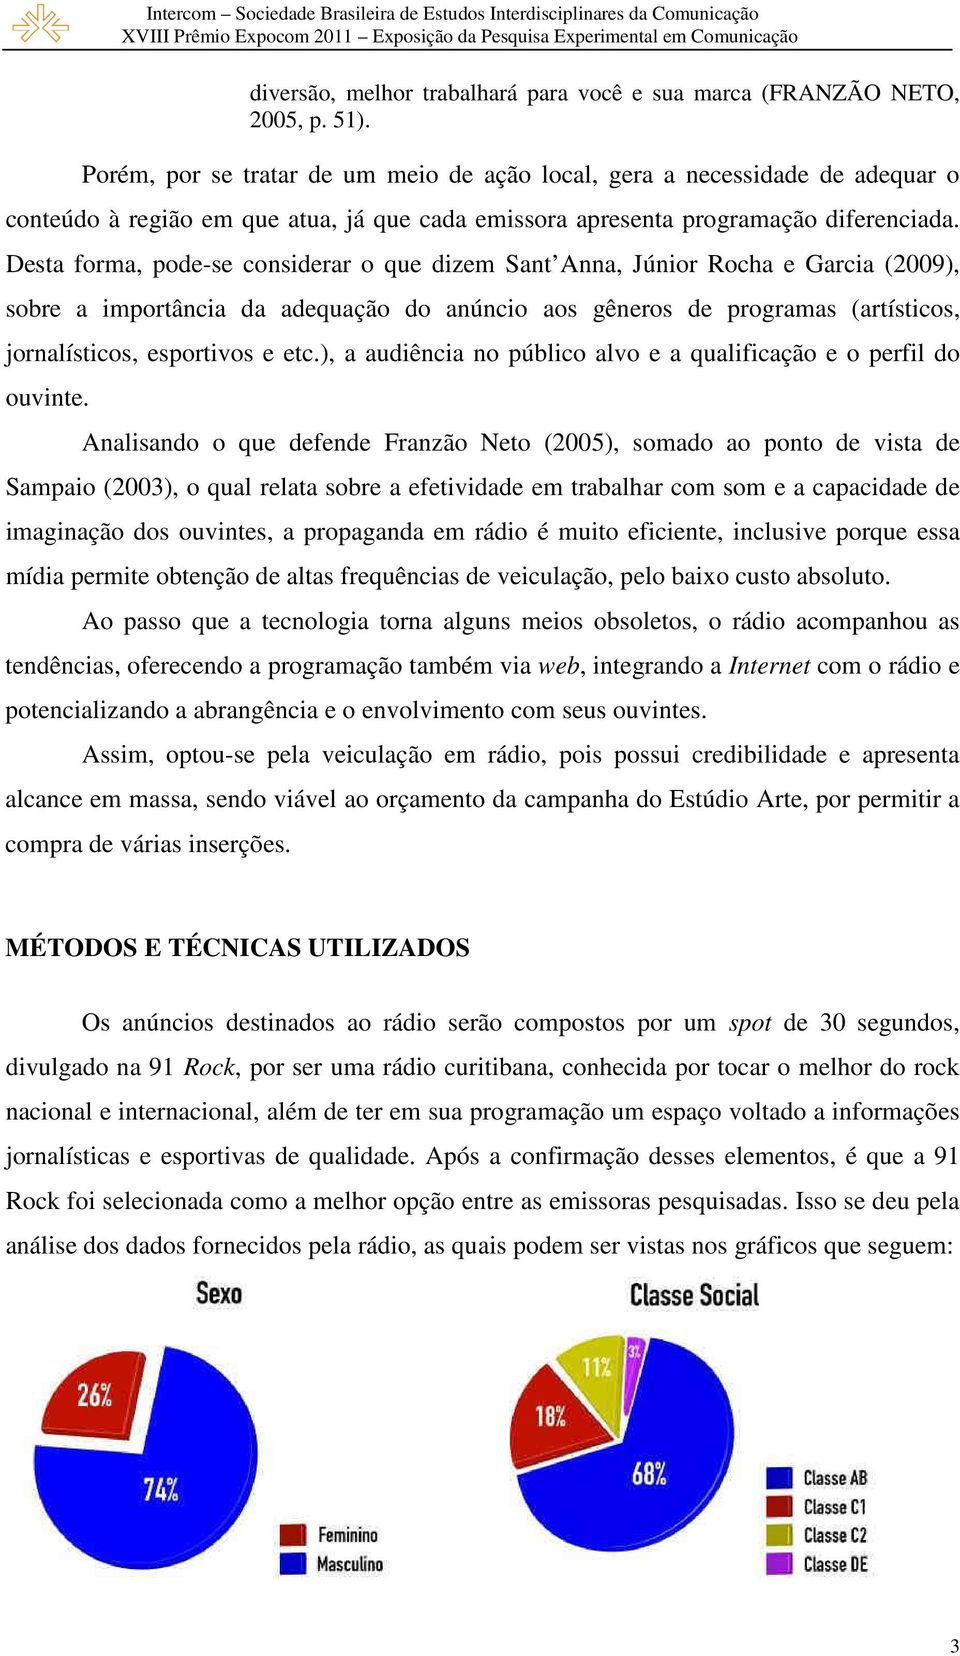 Desta forma, pode-se considerar o que dizem Sant Anna, Júnior Rocha e Garcia (2009), sobre a importância da adequação do anúncio aos gêneros de programas (artísticos, jornalísticos, esportivos e etc.